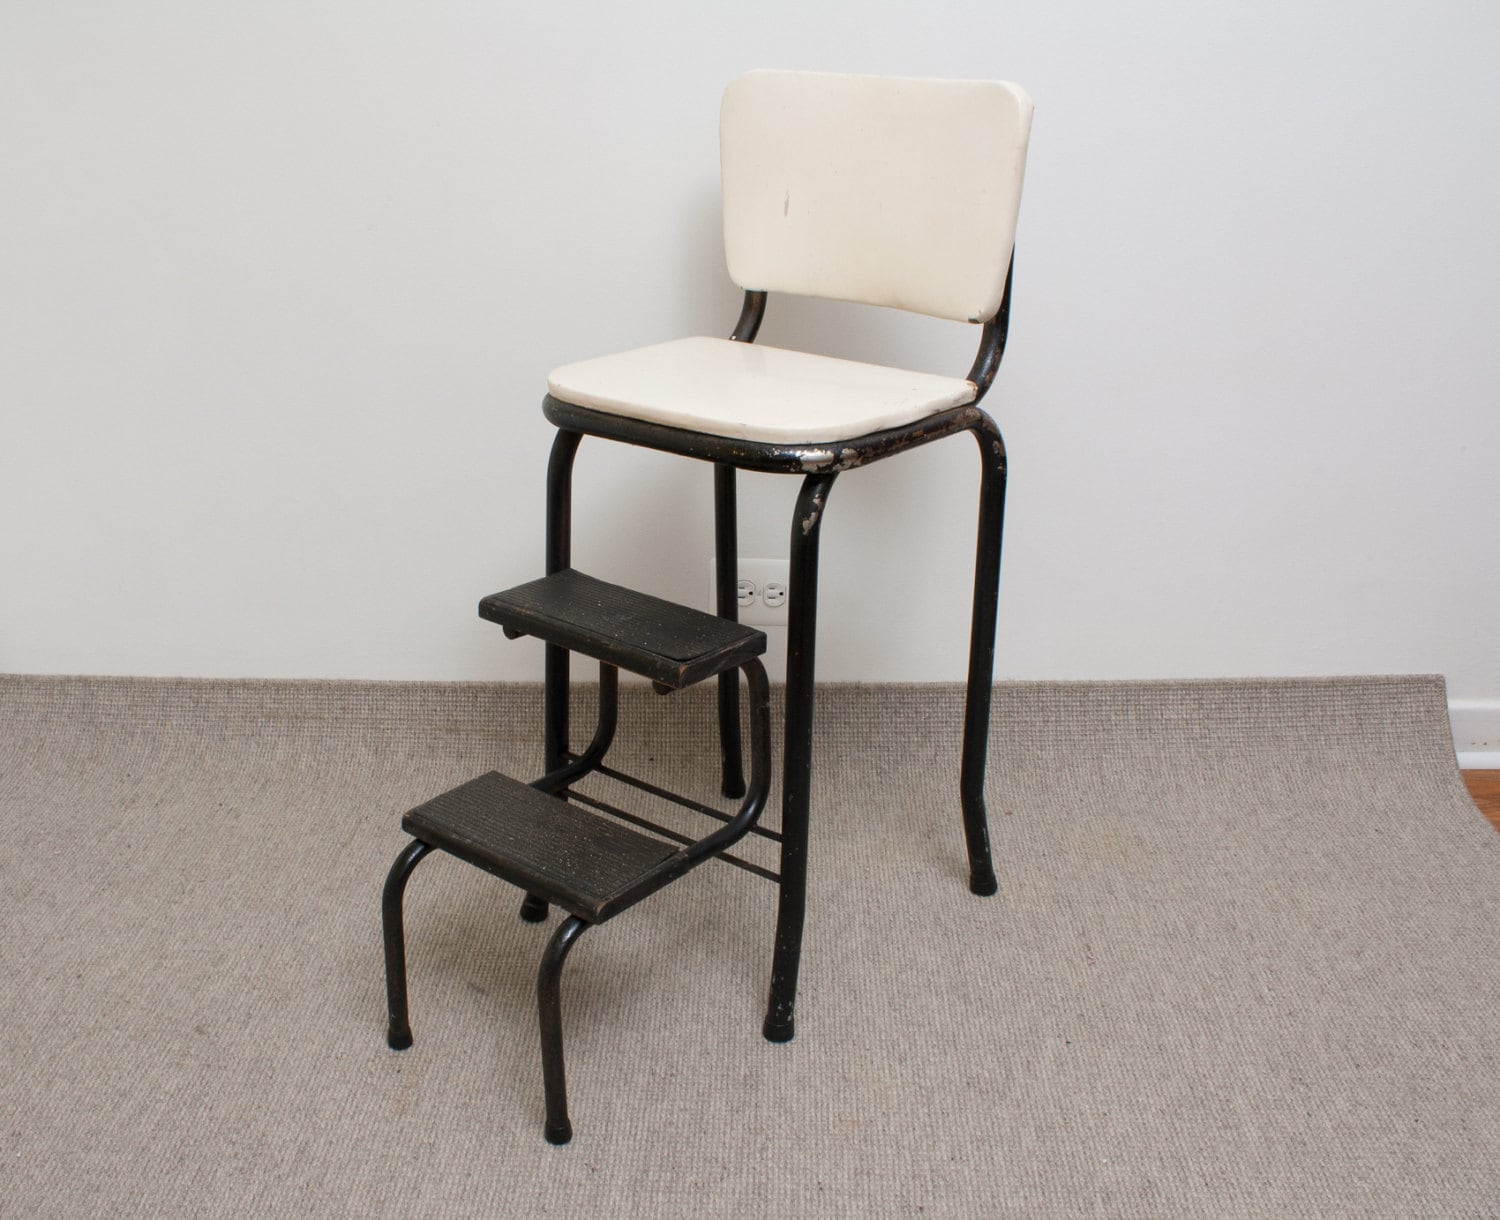 antique design kitchen step stool chair